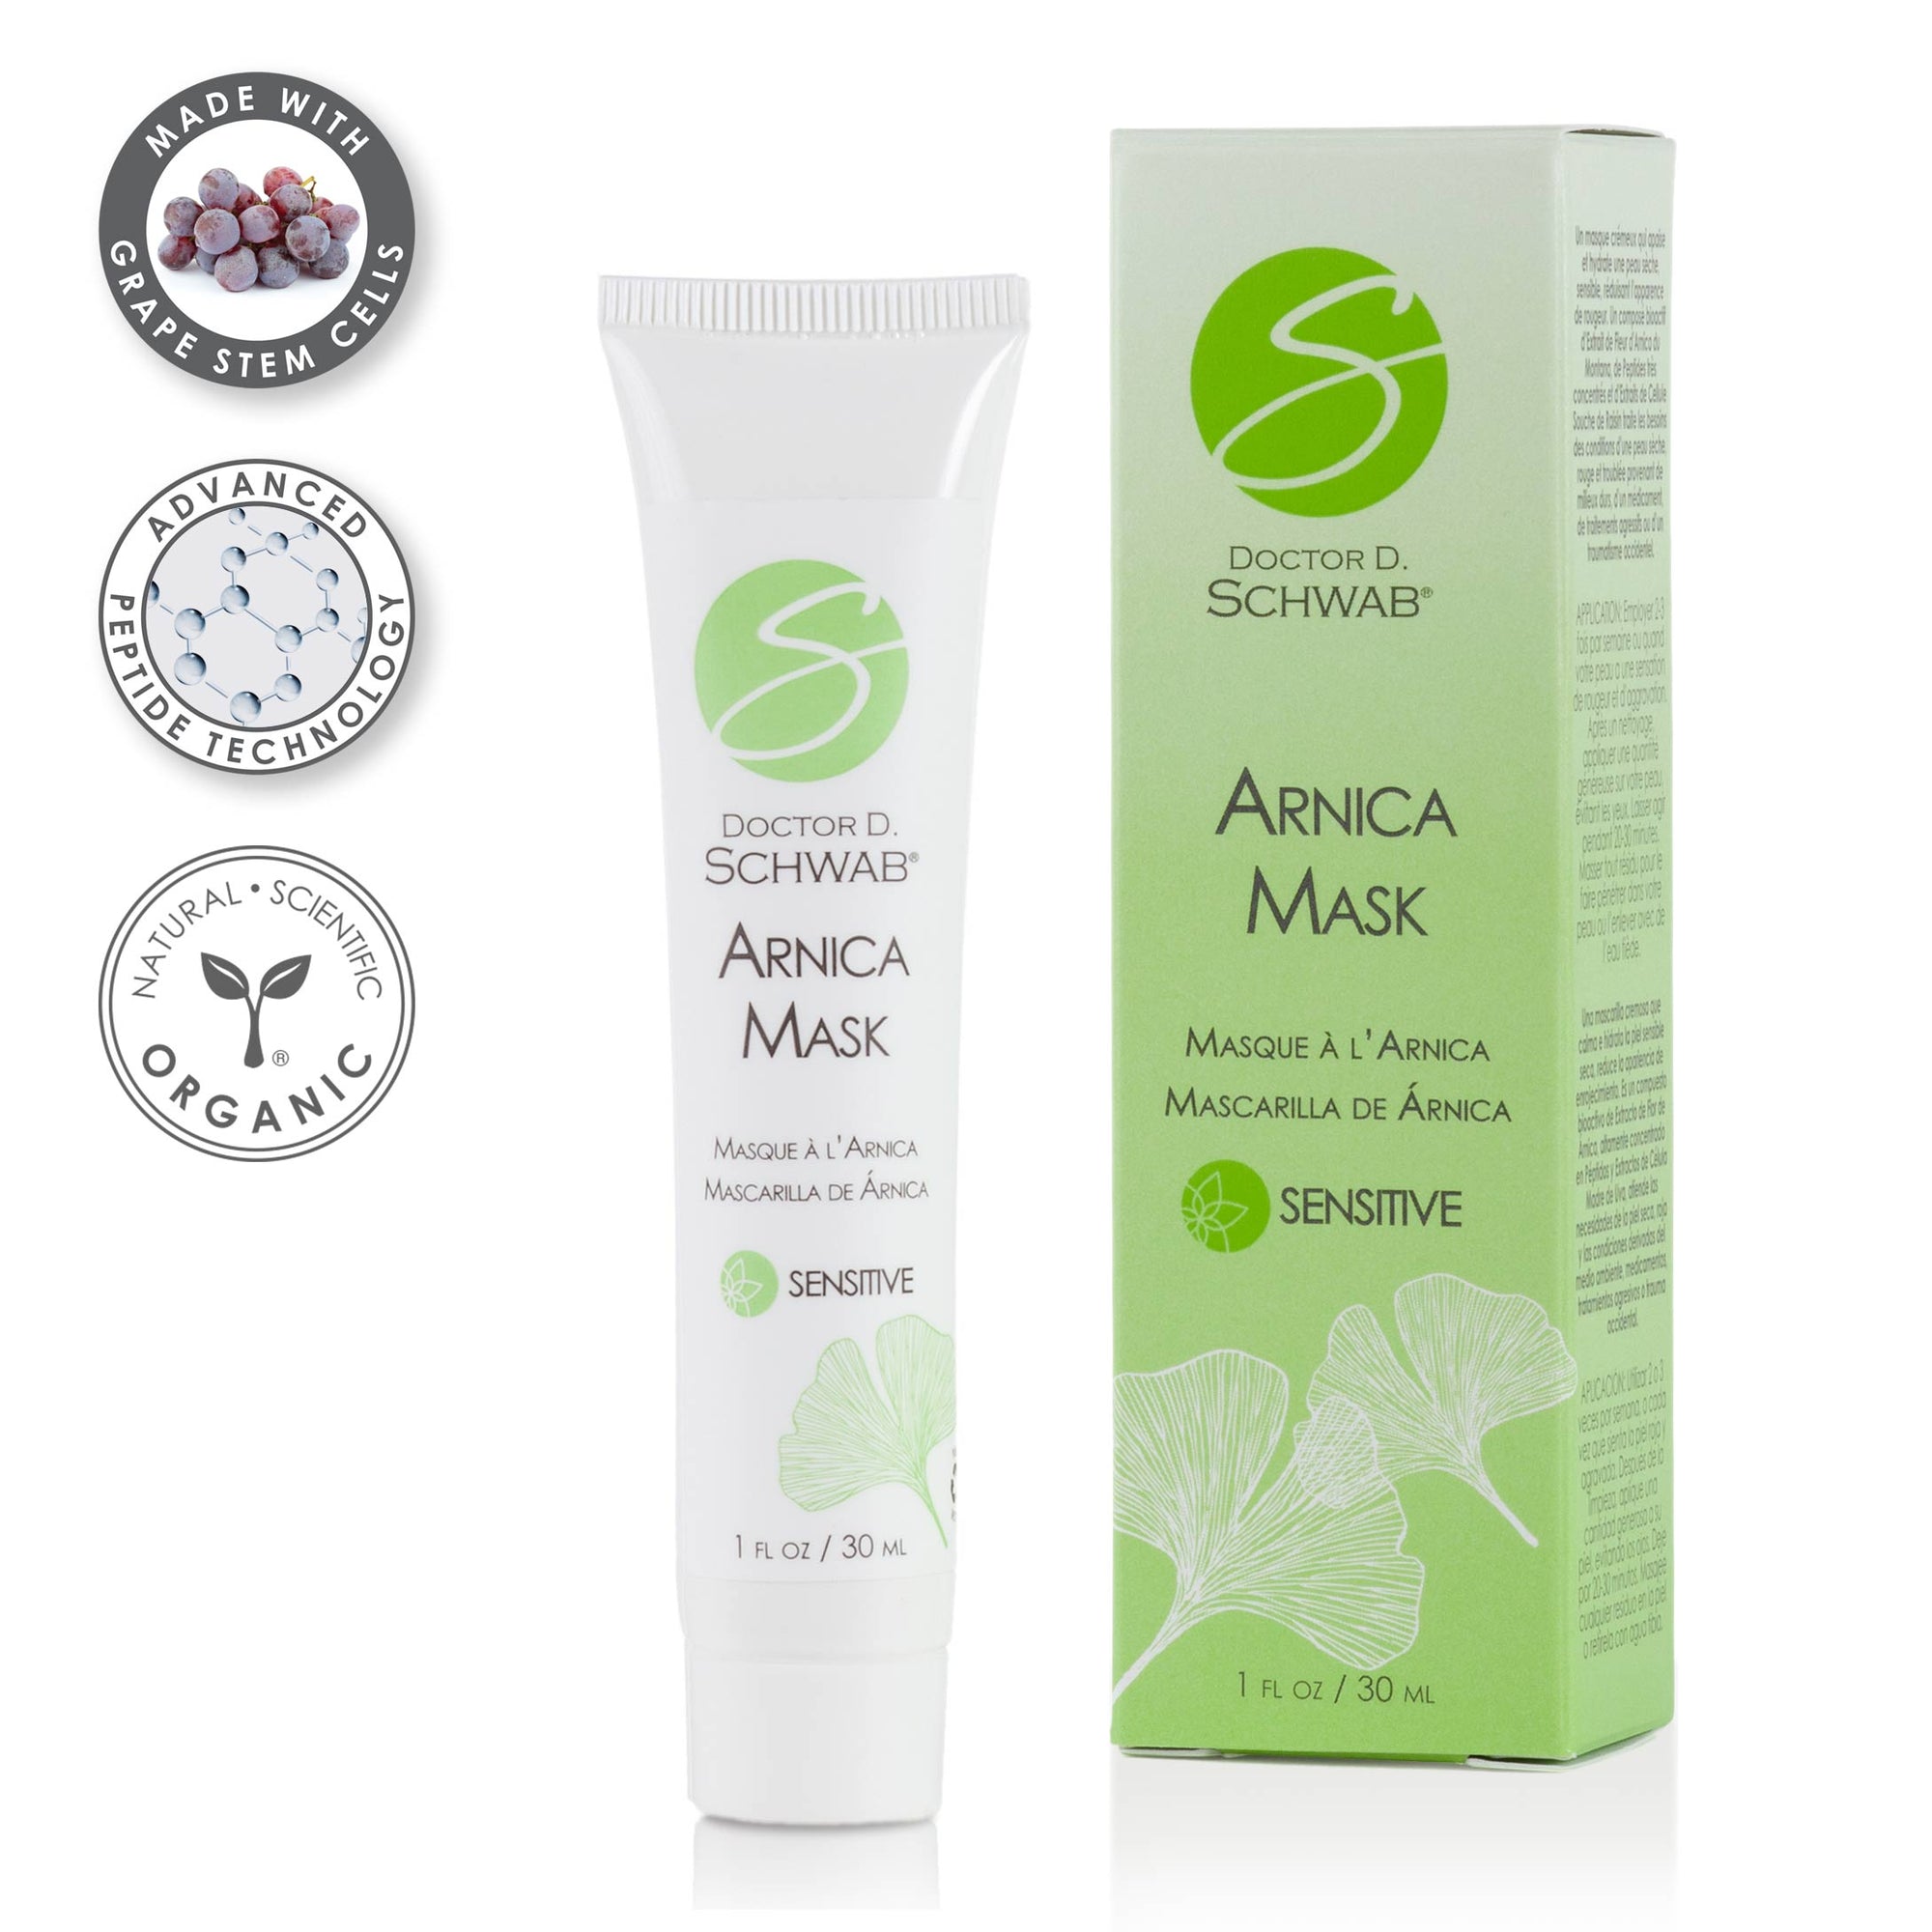 Arnica Mask- For Dry, Sensitive Skin